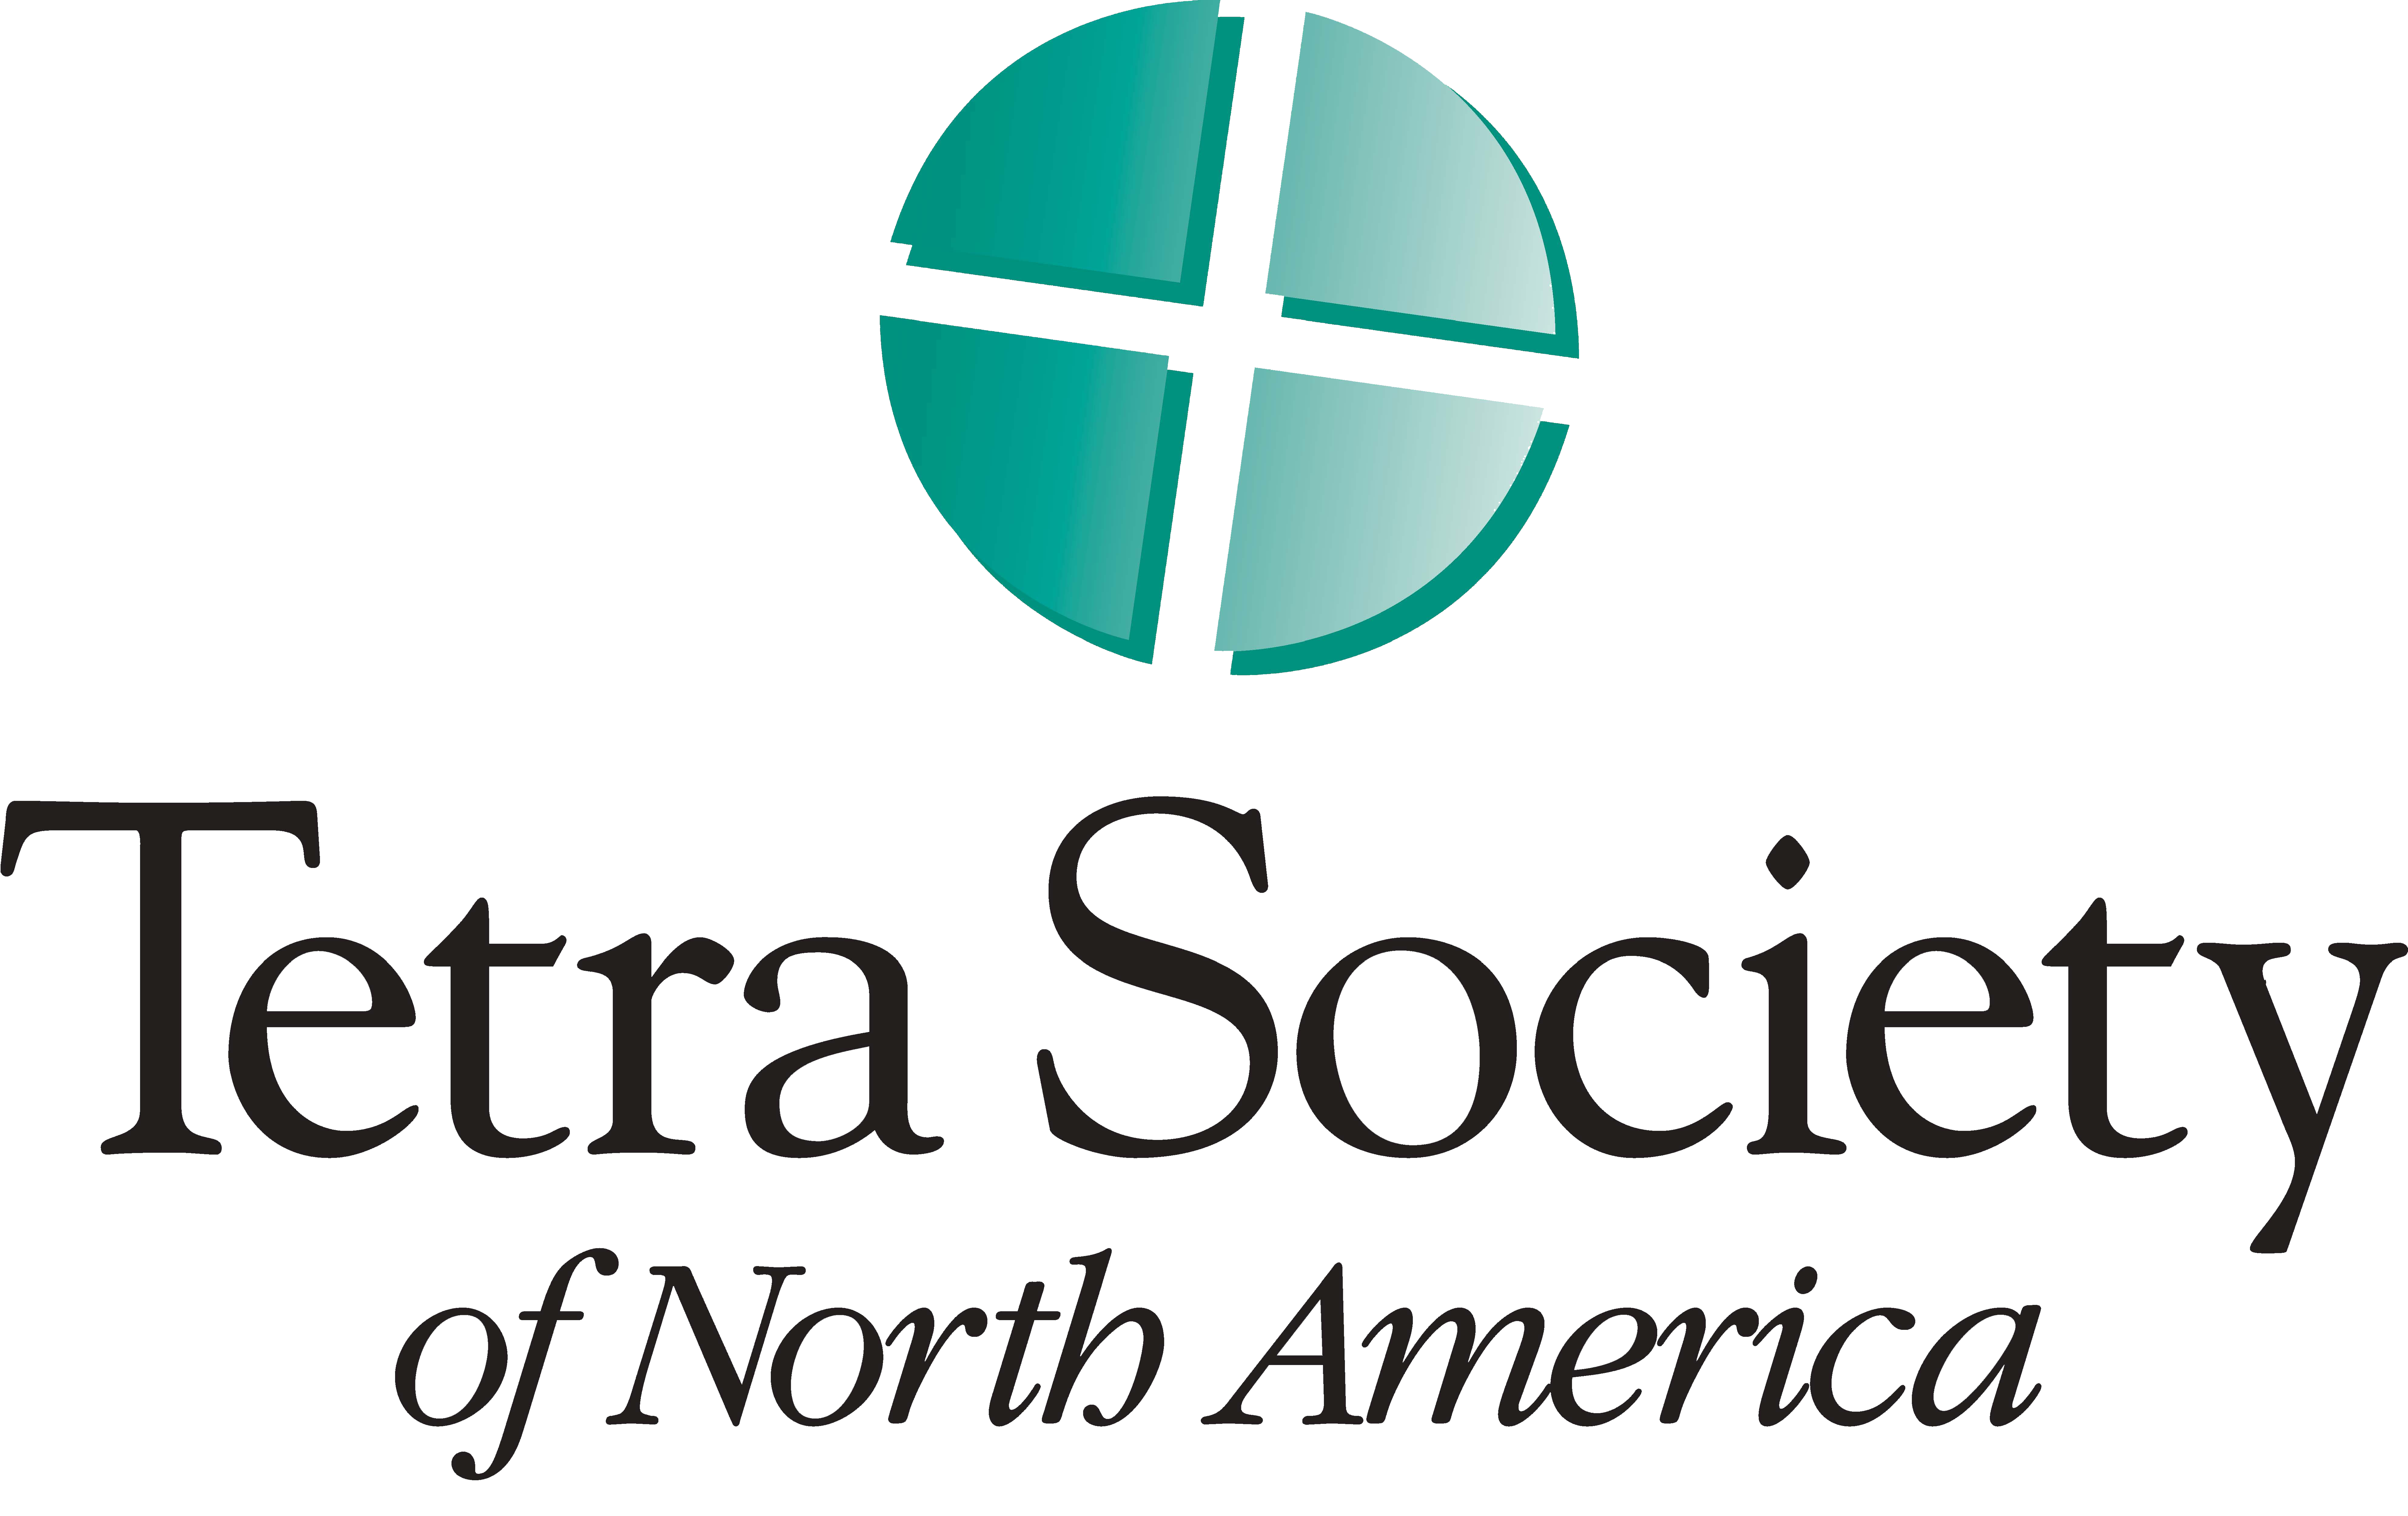 Tetra society of North America Logo